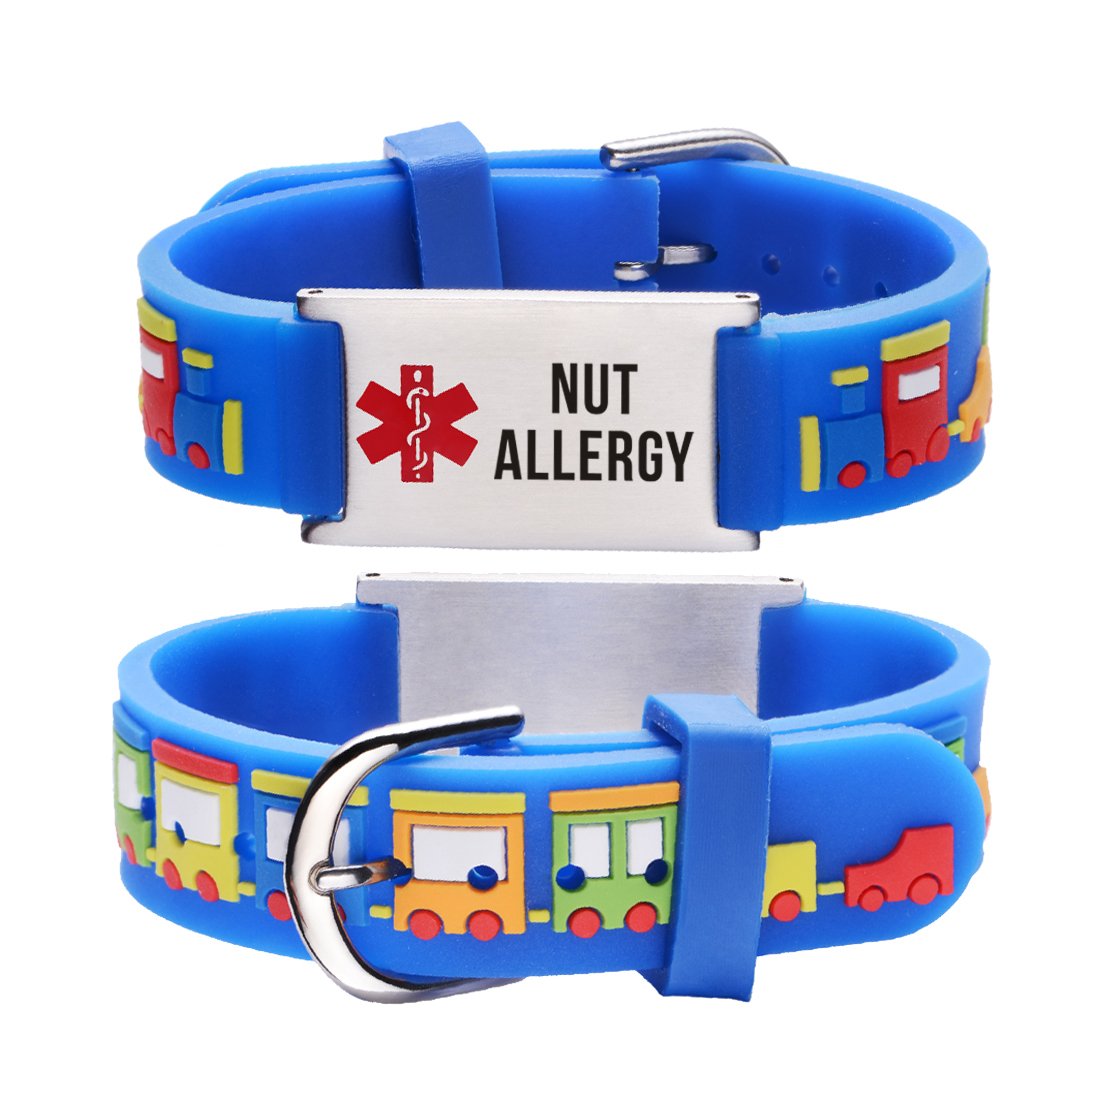 Nut allergy  bracelets for kids-Small train